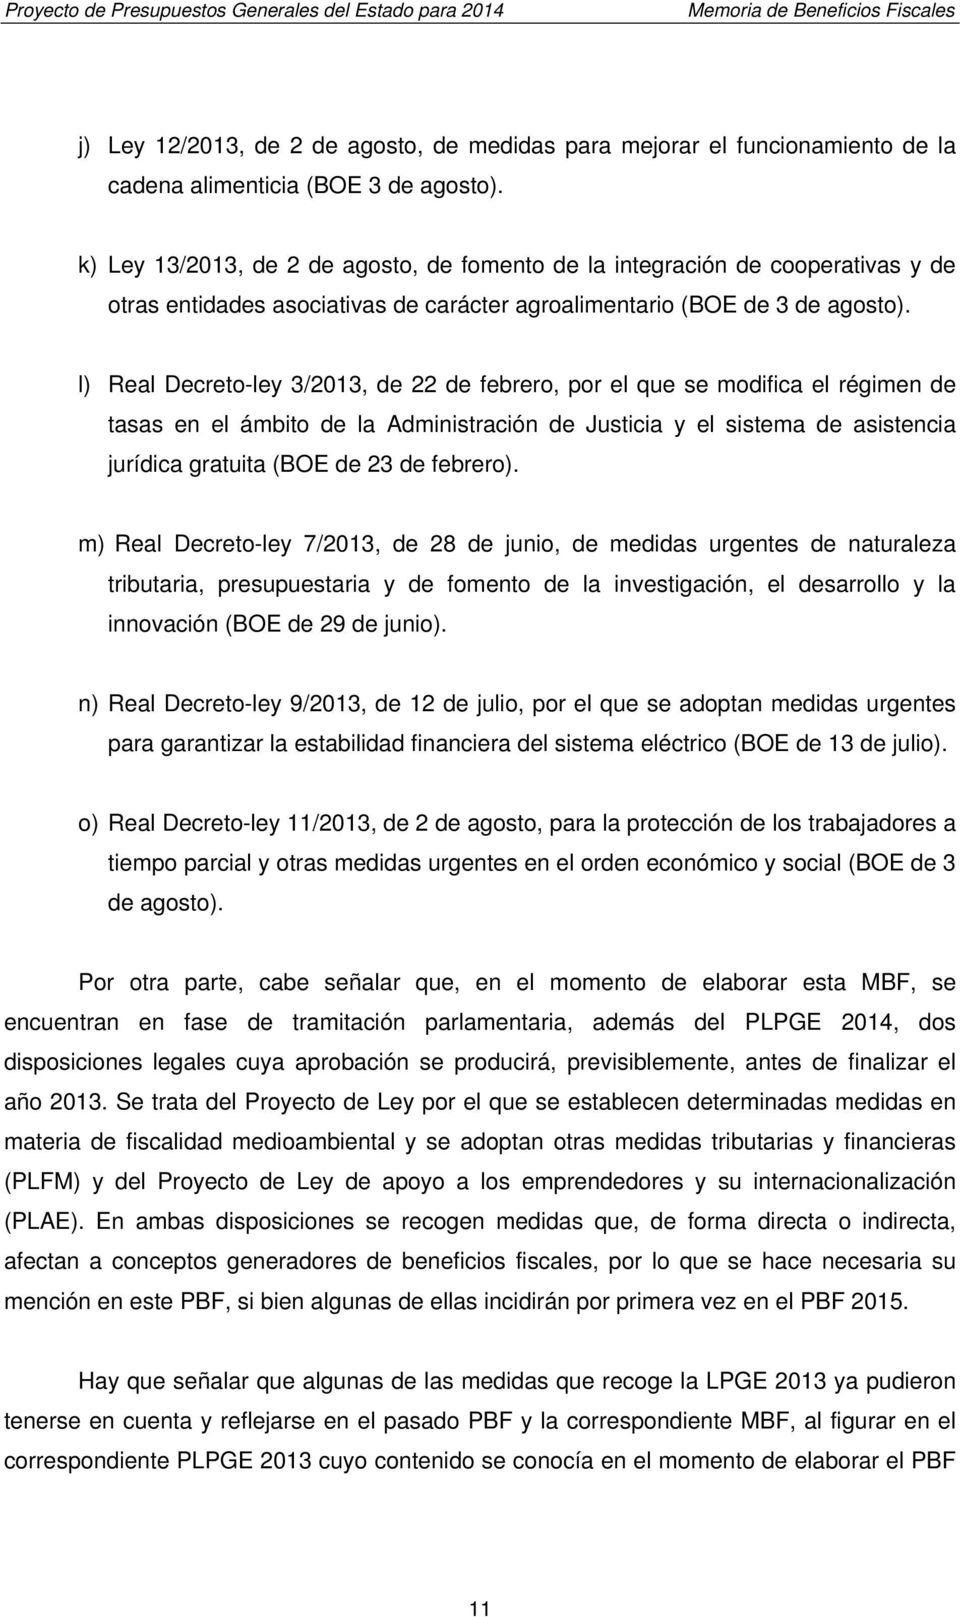 l) Real Decreto-ley 3/2013, de 22 de febrero, por el que se modifica el régimen de tasas en el ámbito de la Administración de Justicia y el sistema de asistencia jurídica gratuita (BOE de 23 de